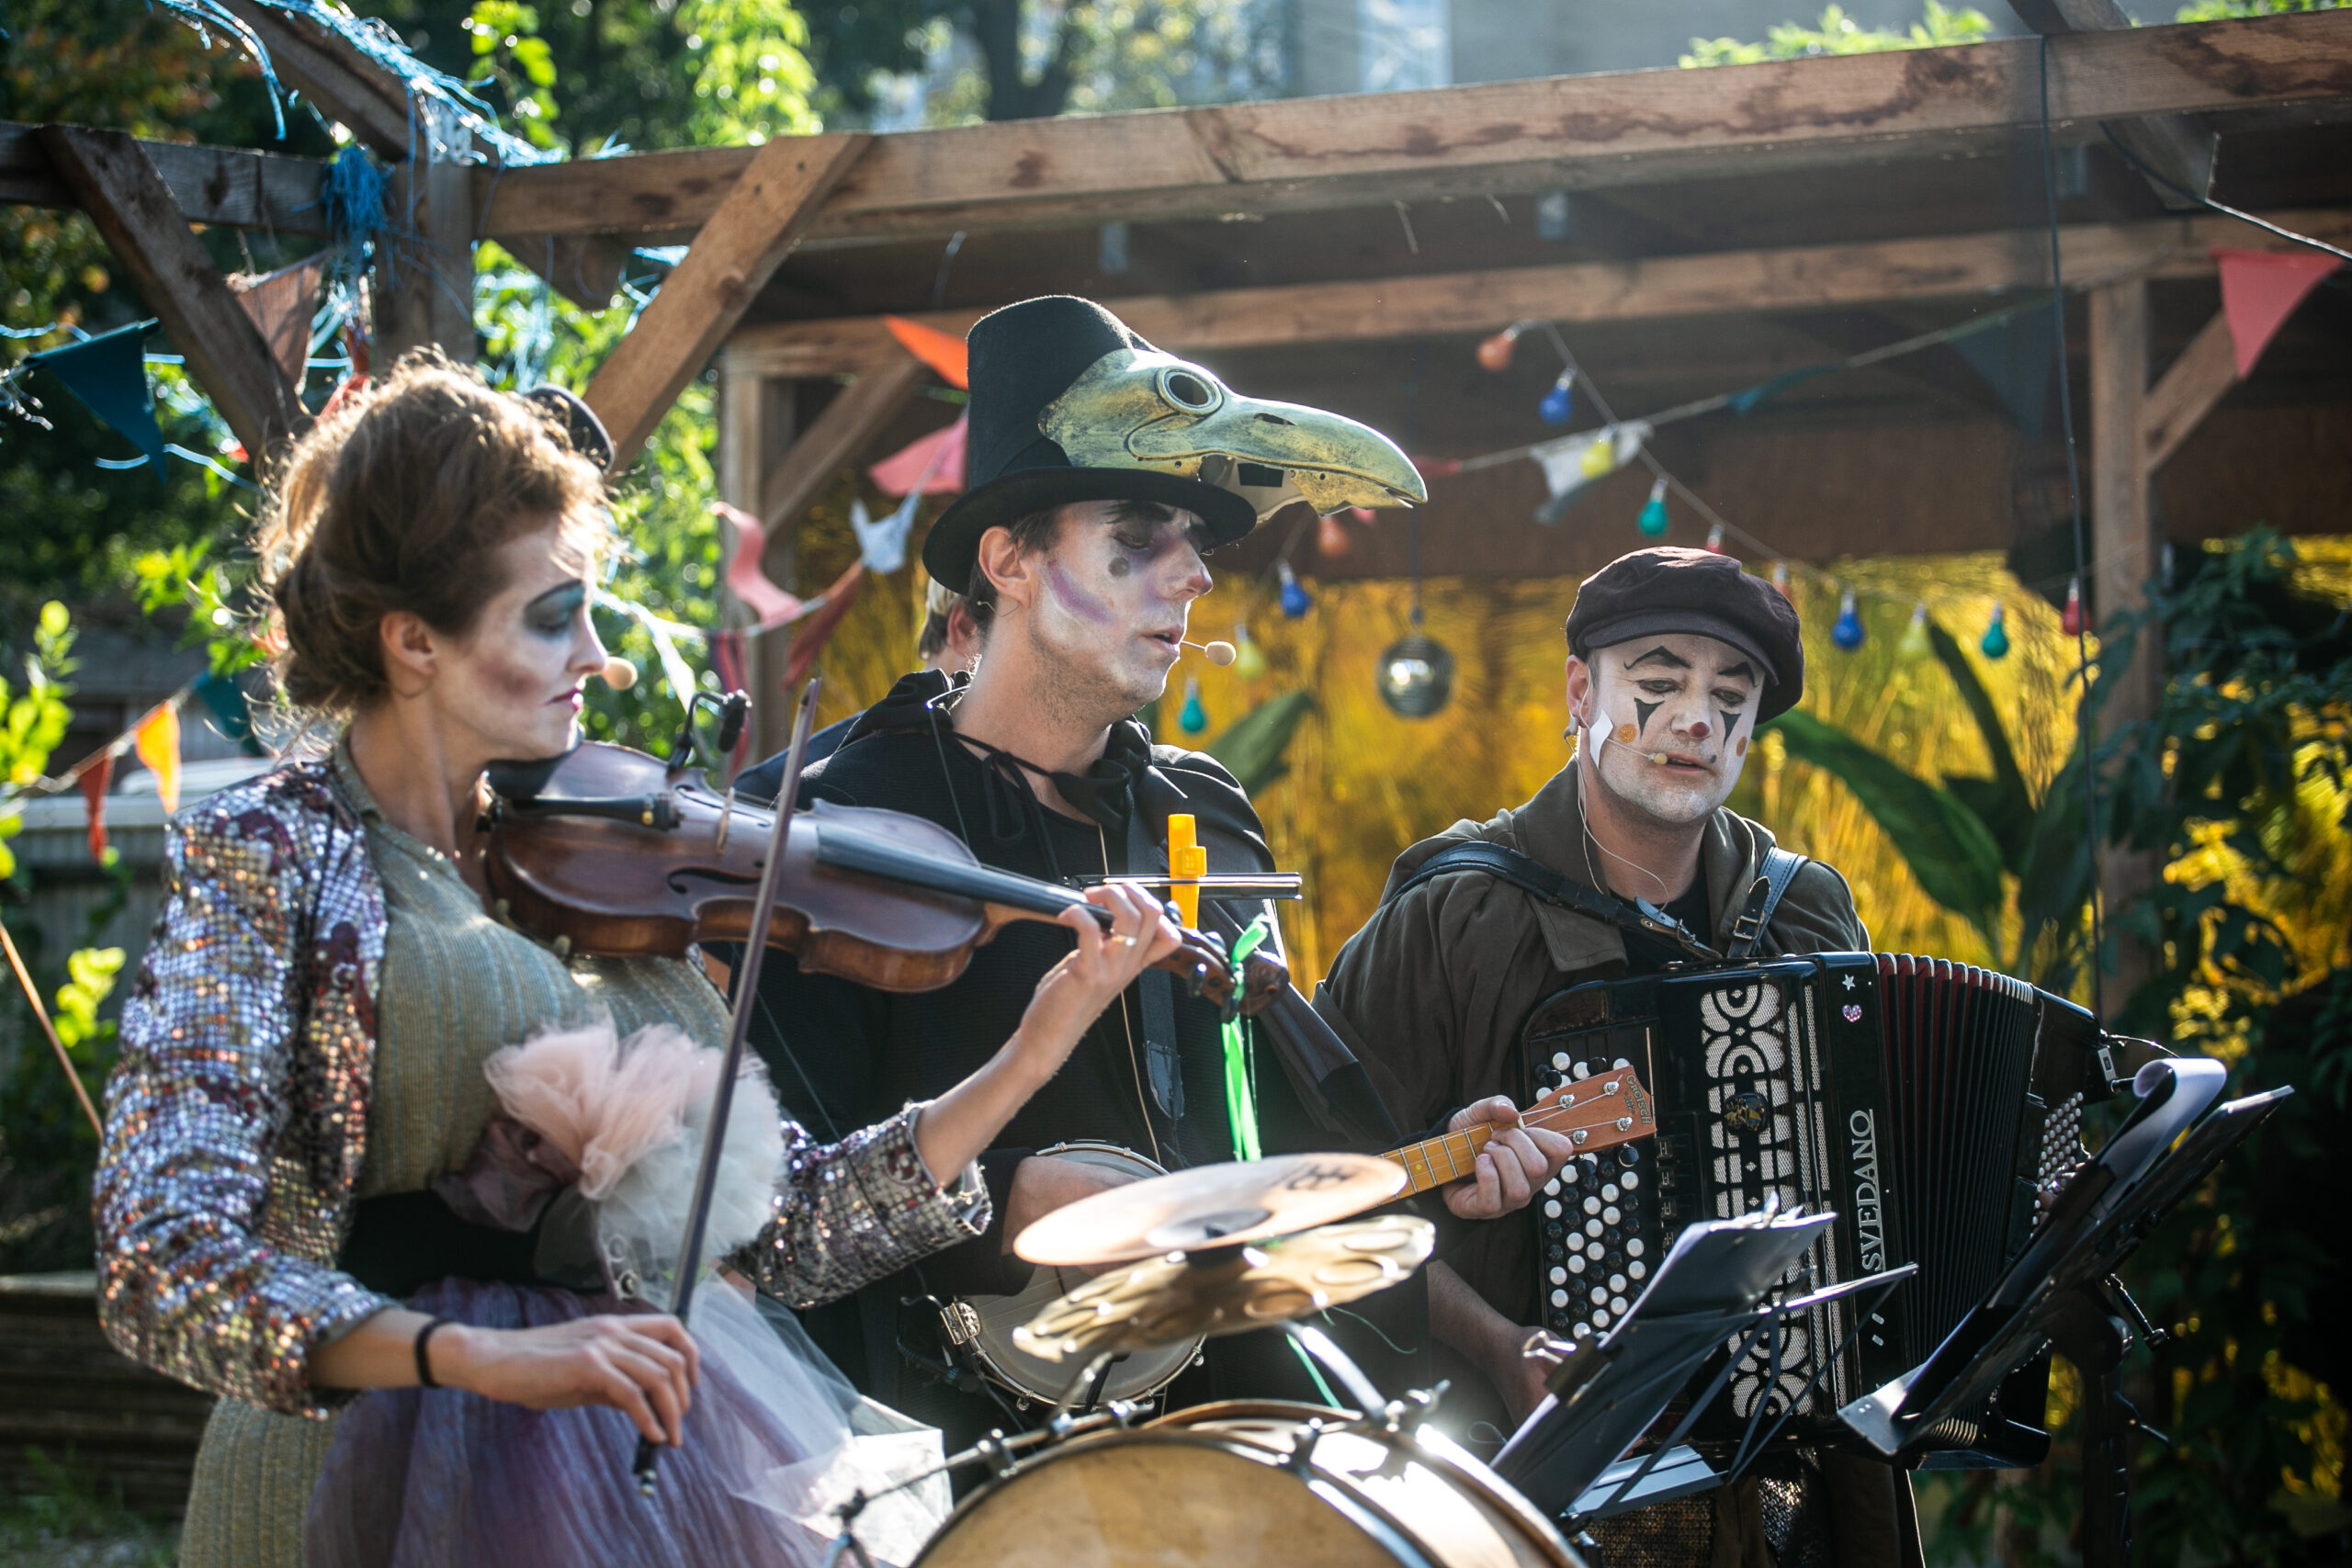 Zdjęcie. Od lewej stoją skrzypaczka, muzyk grający na banjo i akordeonista ubrani w fantazyjne stroje i mający pomalowane twarze. Występują na świeżym powietrzu. W tle drewniana konstrukcja altany, rośliny i kolorowe lampki.